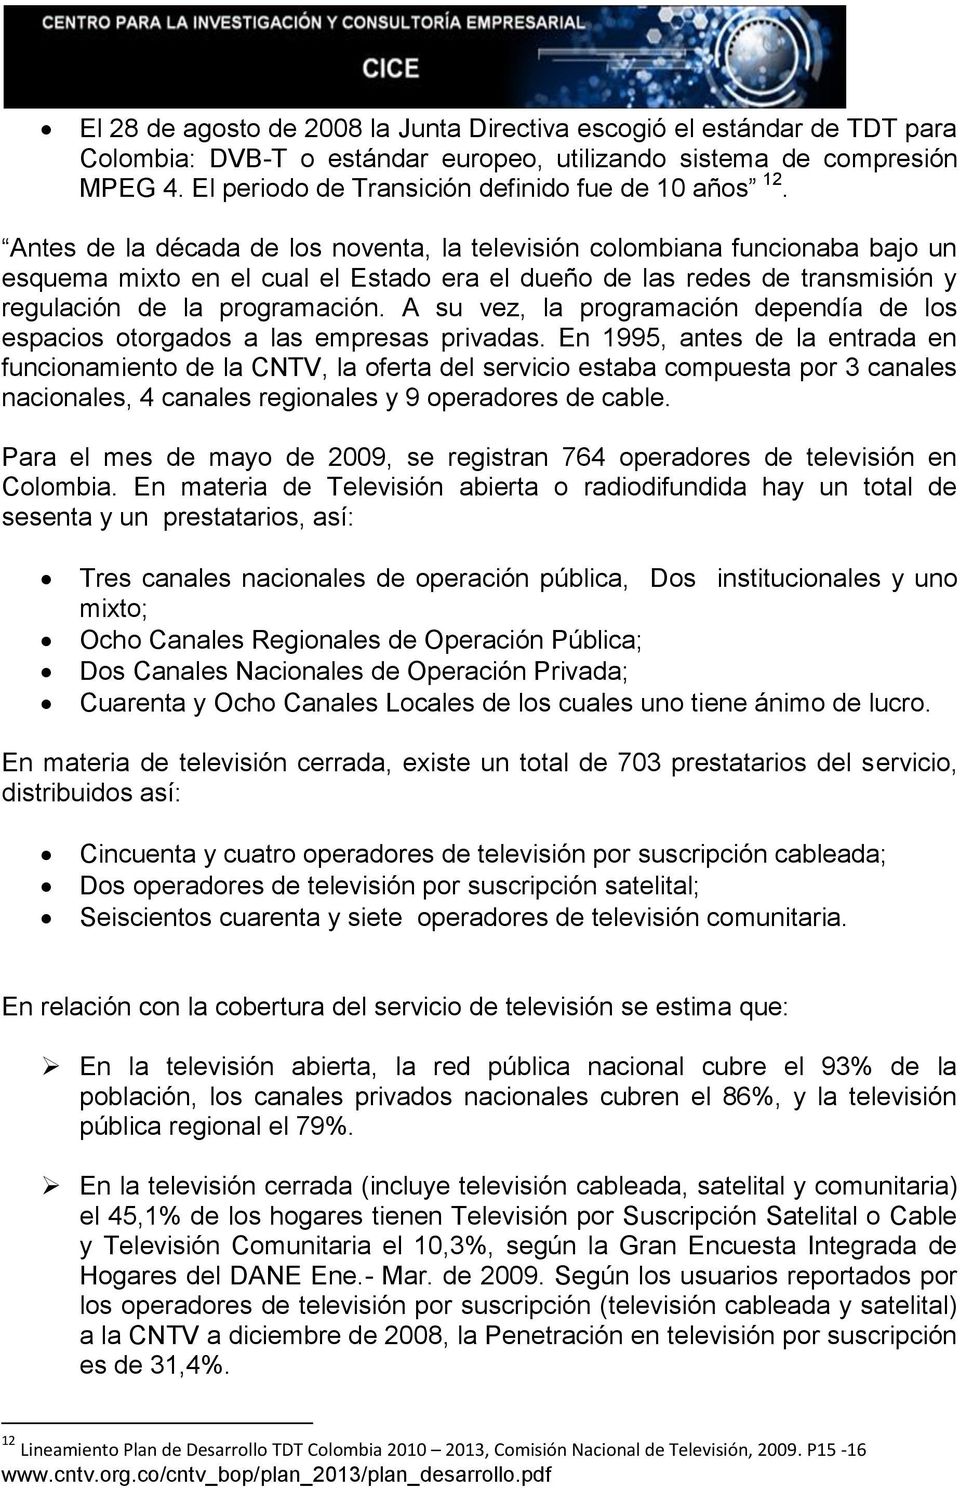 Antes de la década de los noventa, la televisión colombiana funcionaba bajo un esquema mixto en el cual el Estado era el dueño de las redes de transmisión y regulación de la programación.